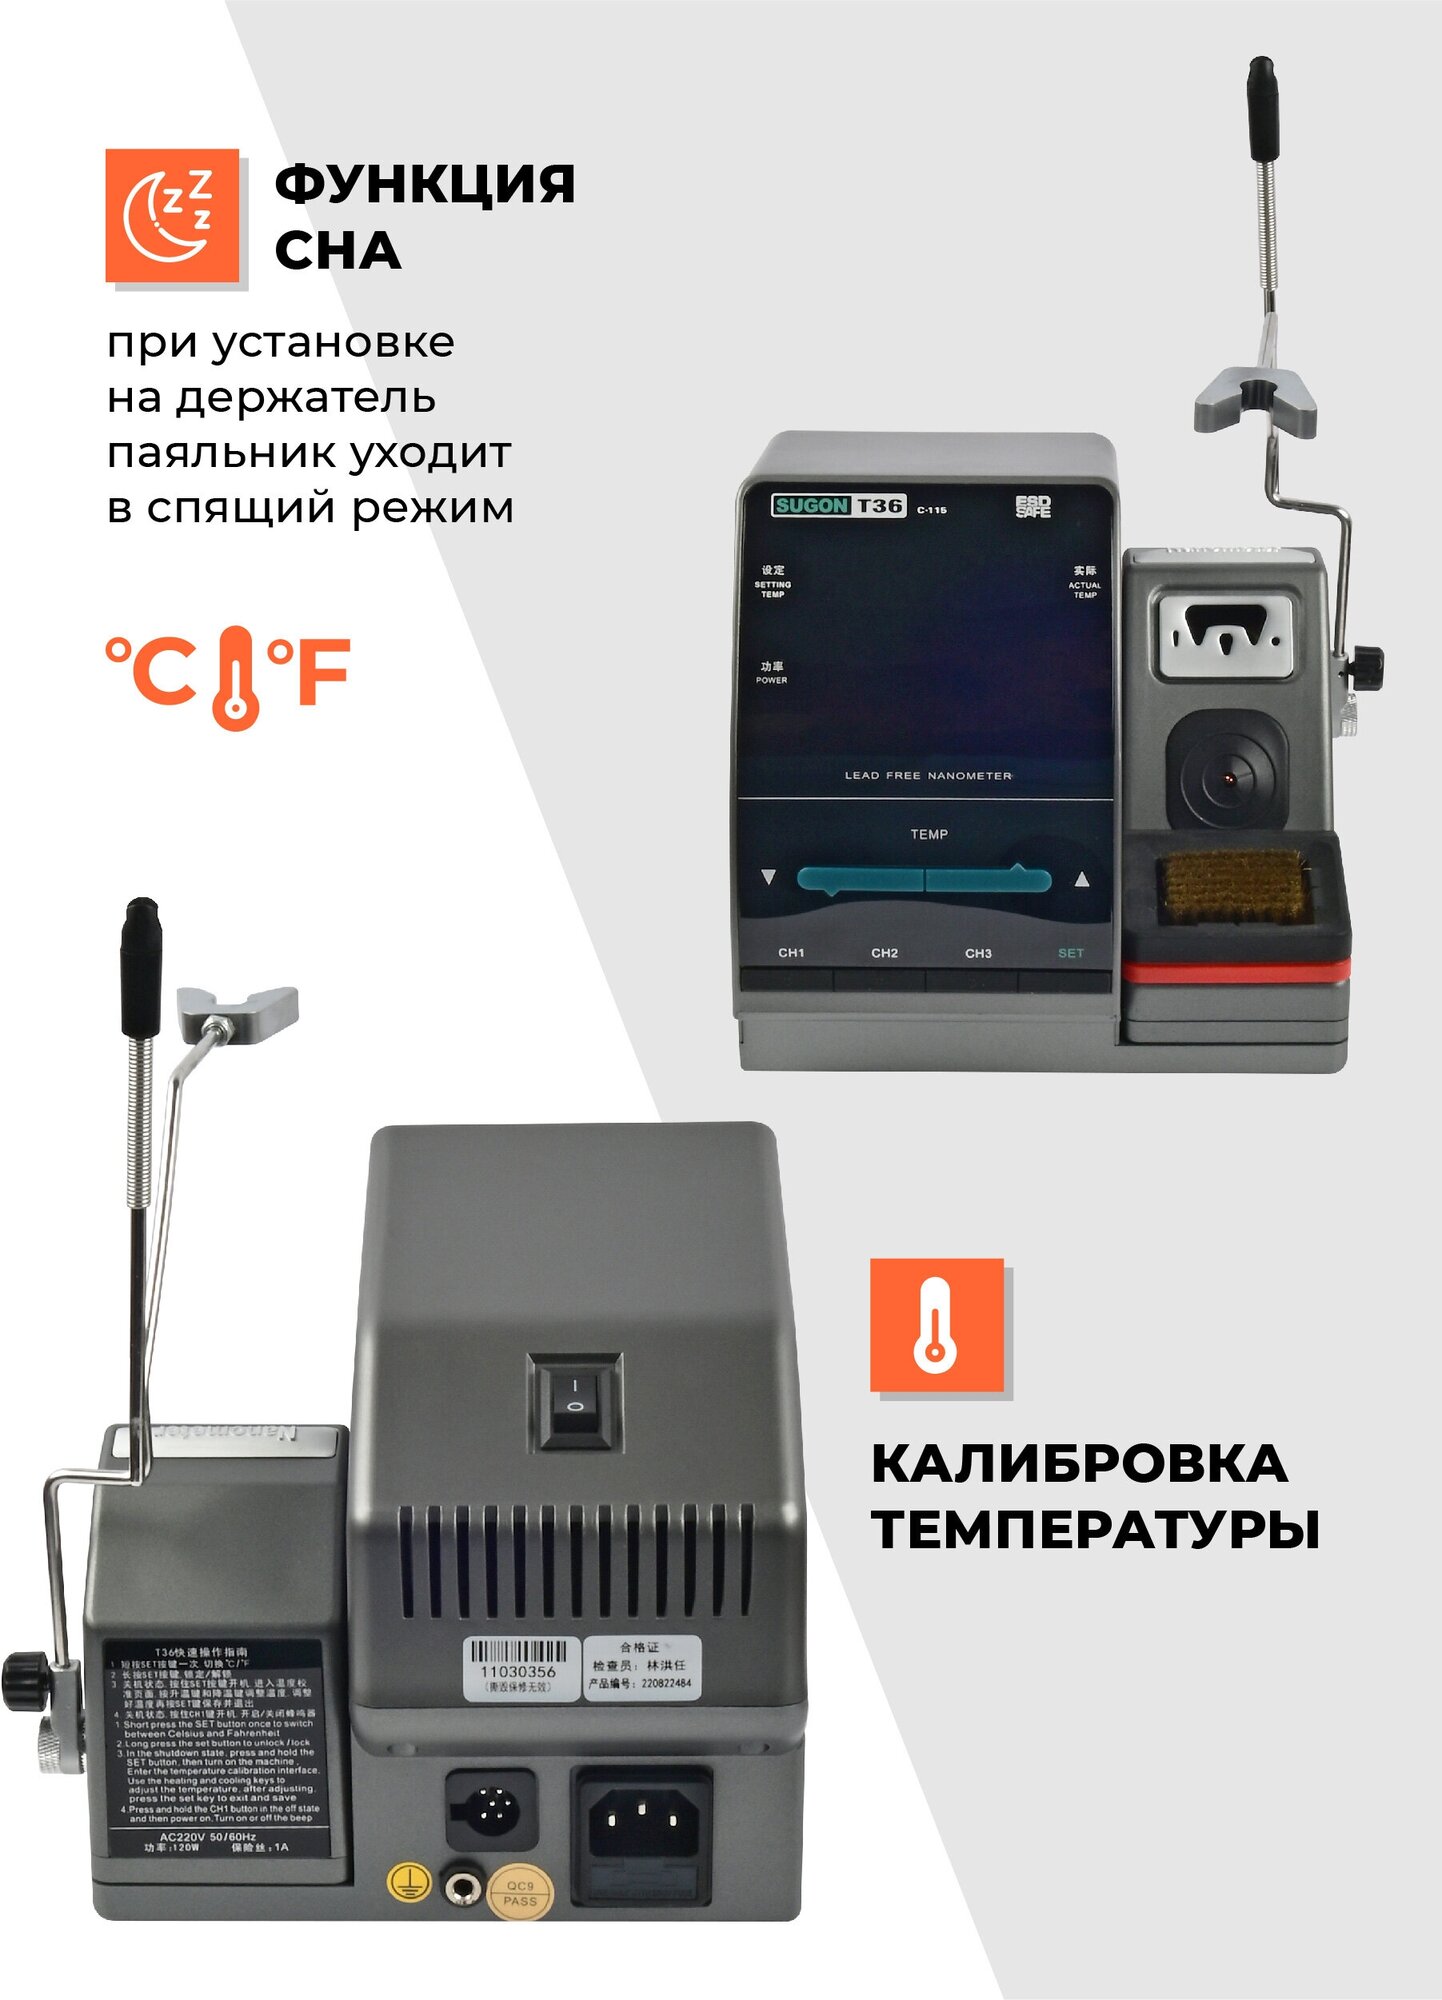 Цифровая паяльная станция-паяльник Sugon T36 S1 120 Вт с жалом C115 с керамическим нагревателем и регулировкой температуры